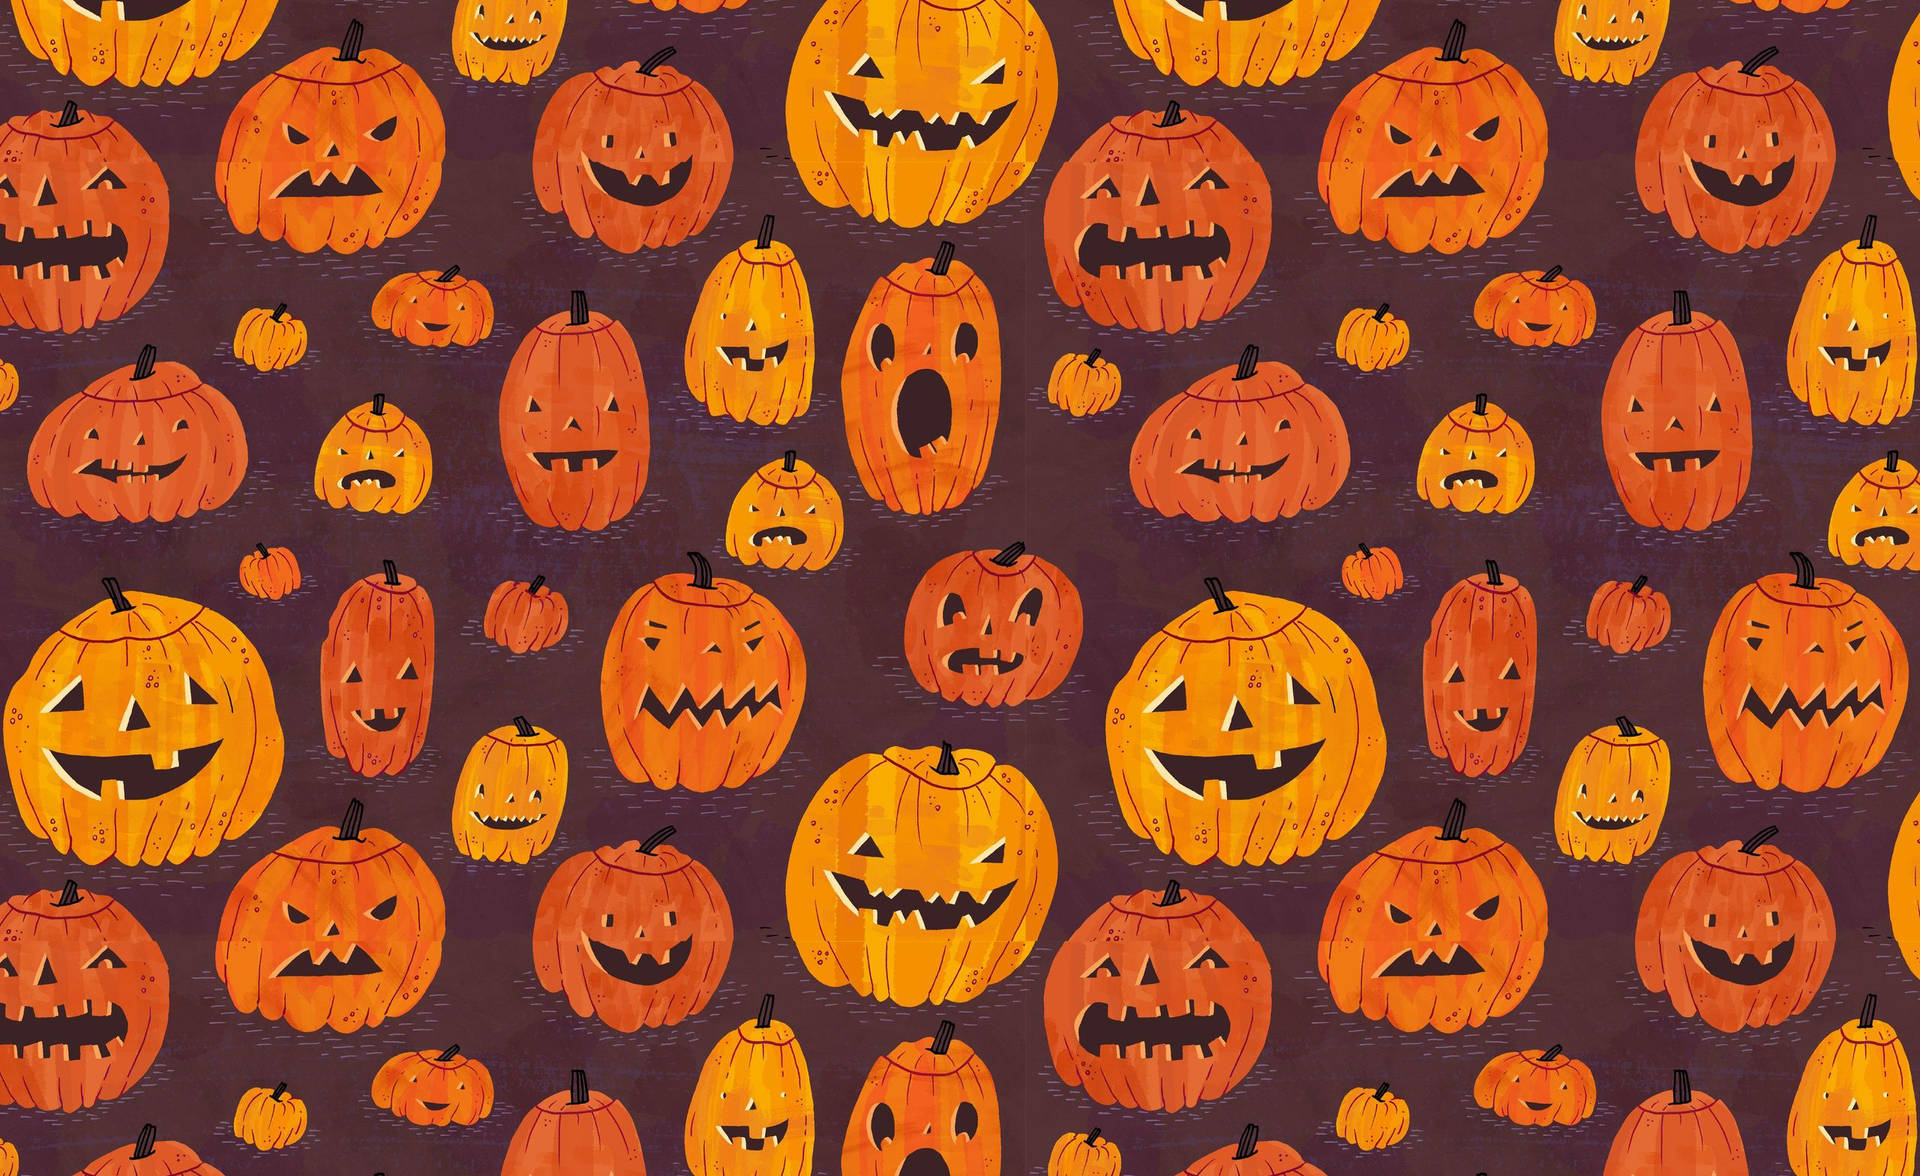 Kommein Gruselstimmung Mit Diesem Halloween-thematisierten Pc-hintergrund! Wallpaper